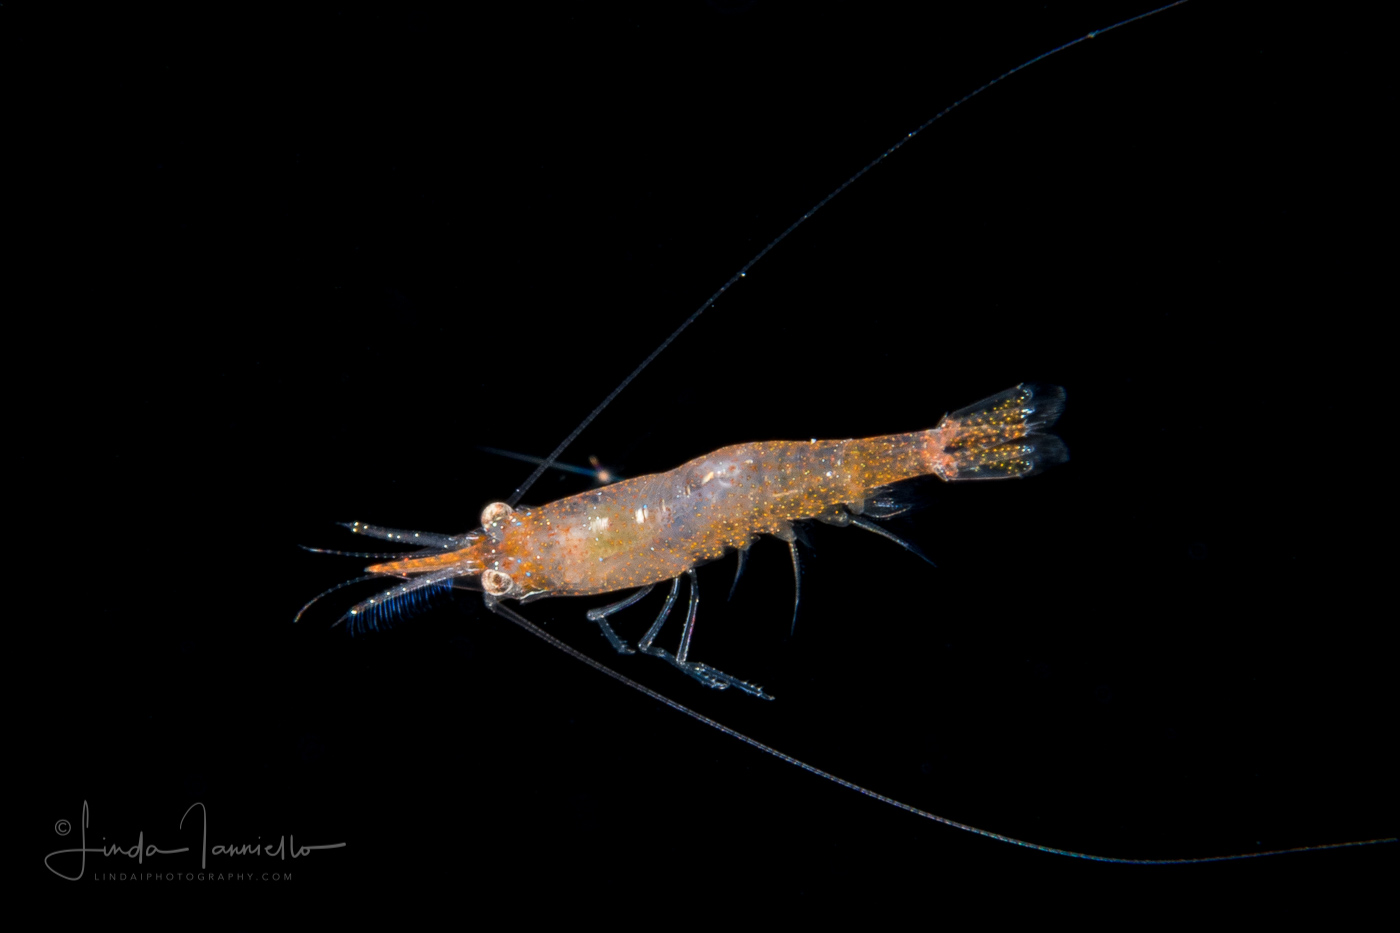 Shrimp - Pasiphaeidae Family - Leptochela sp.